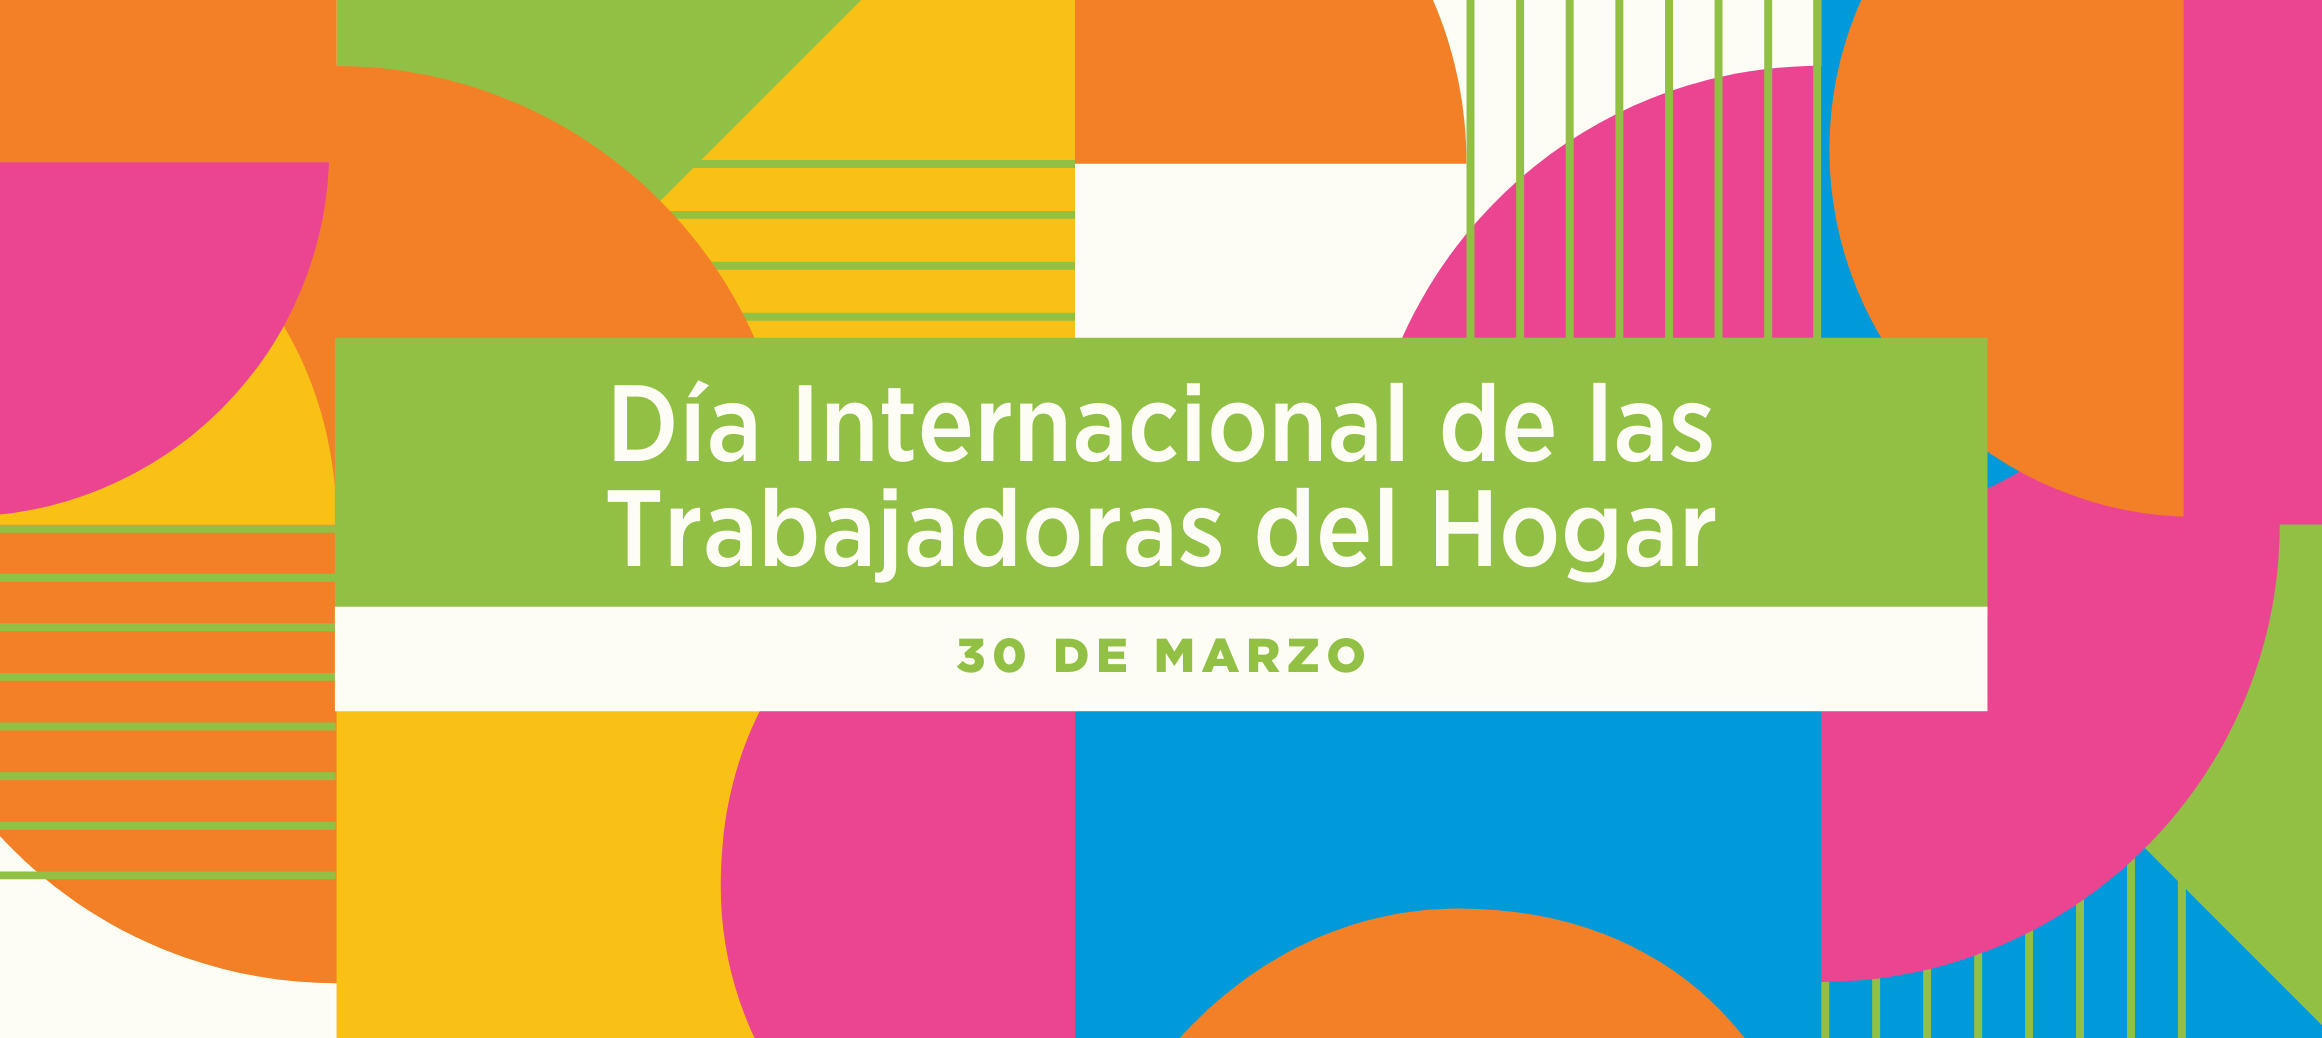 Día-Internacional-de-las-Trabajadoras-del-Hogar-v02 header